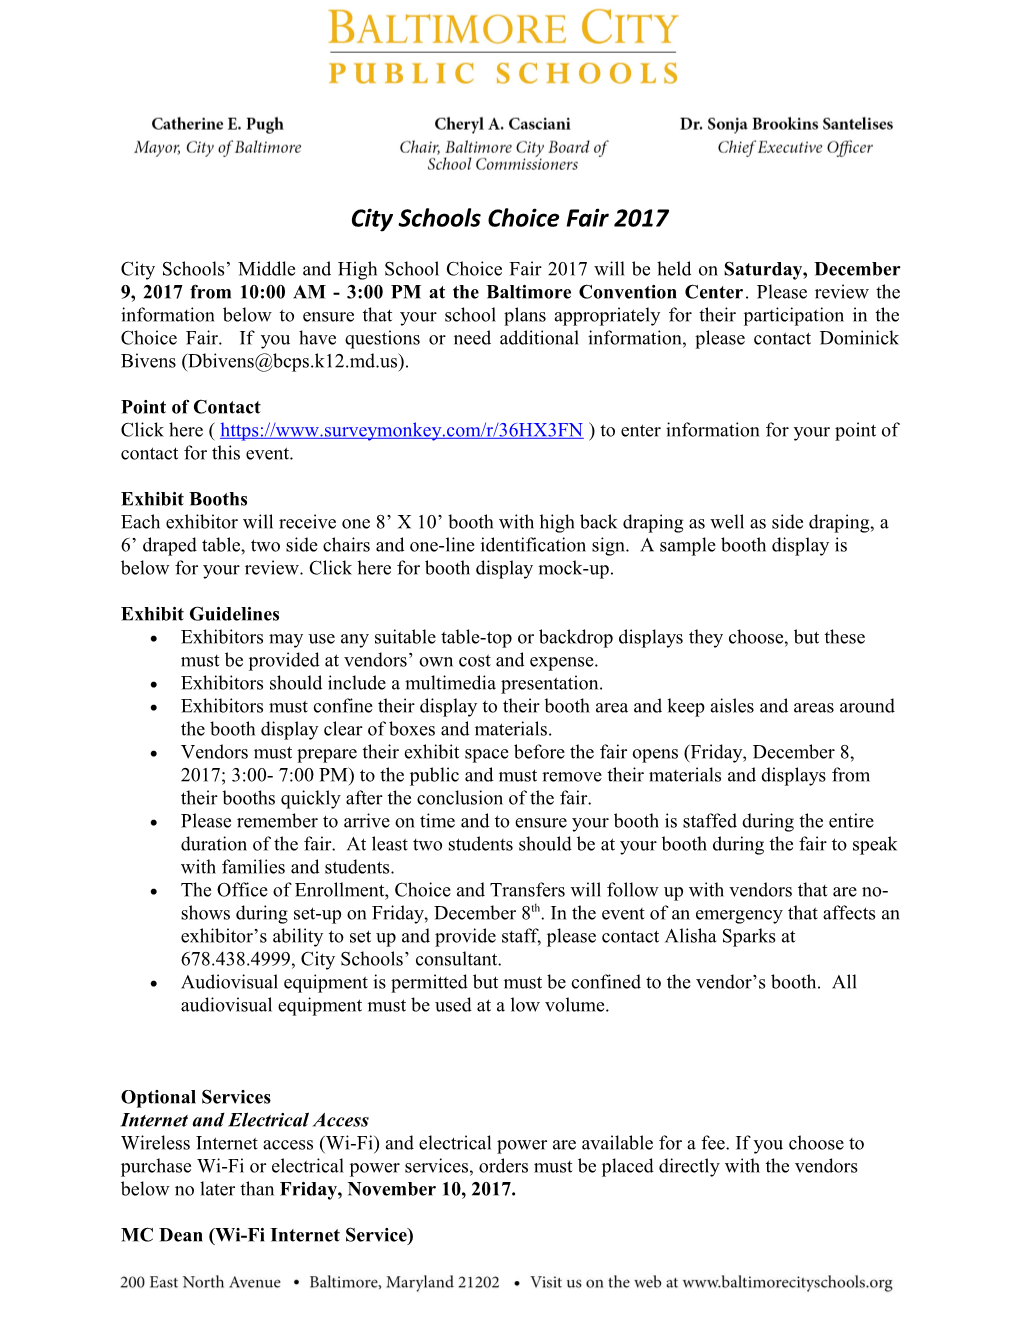 City Schools Choice Fair 2017